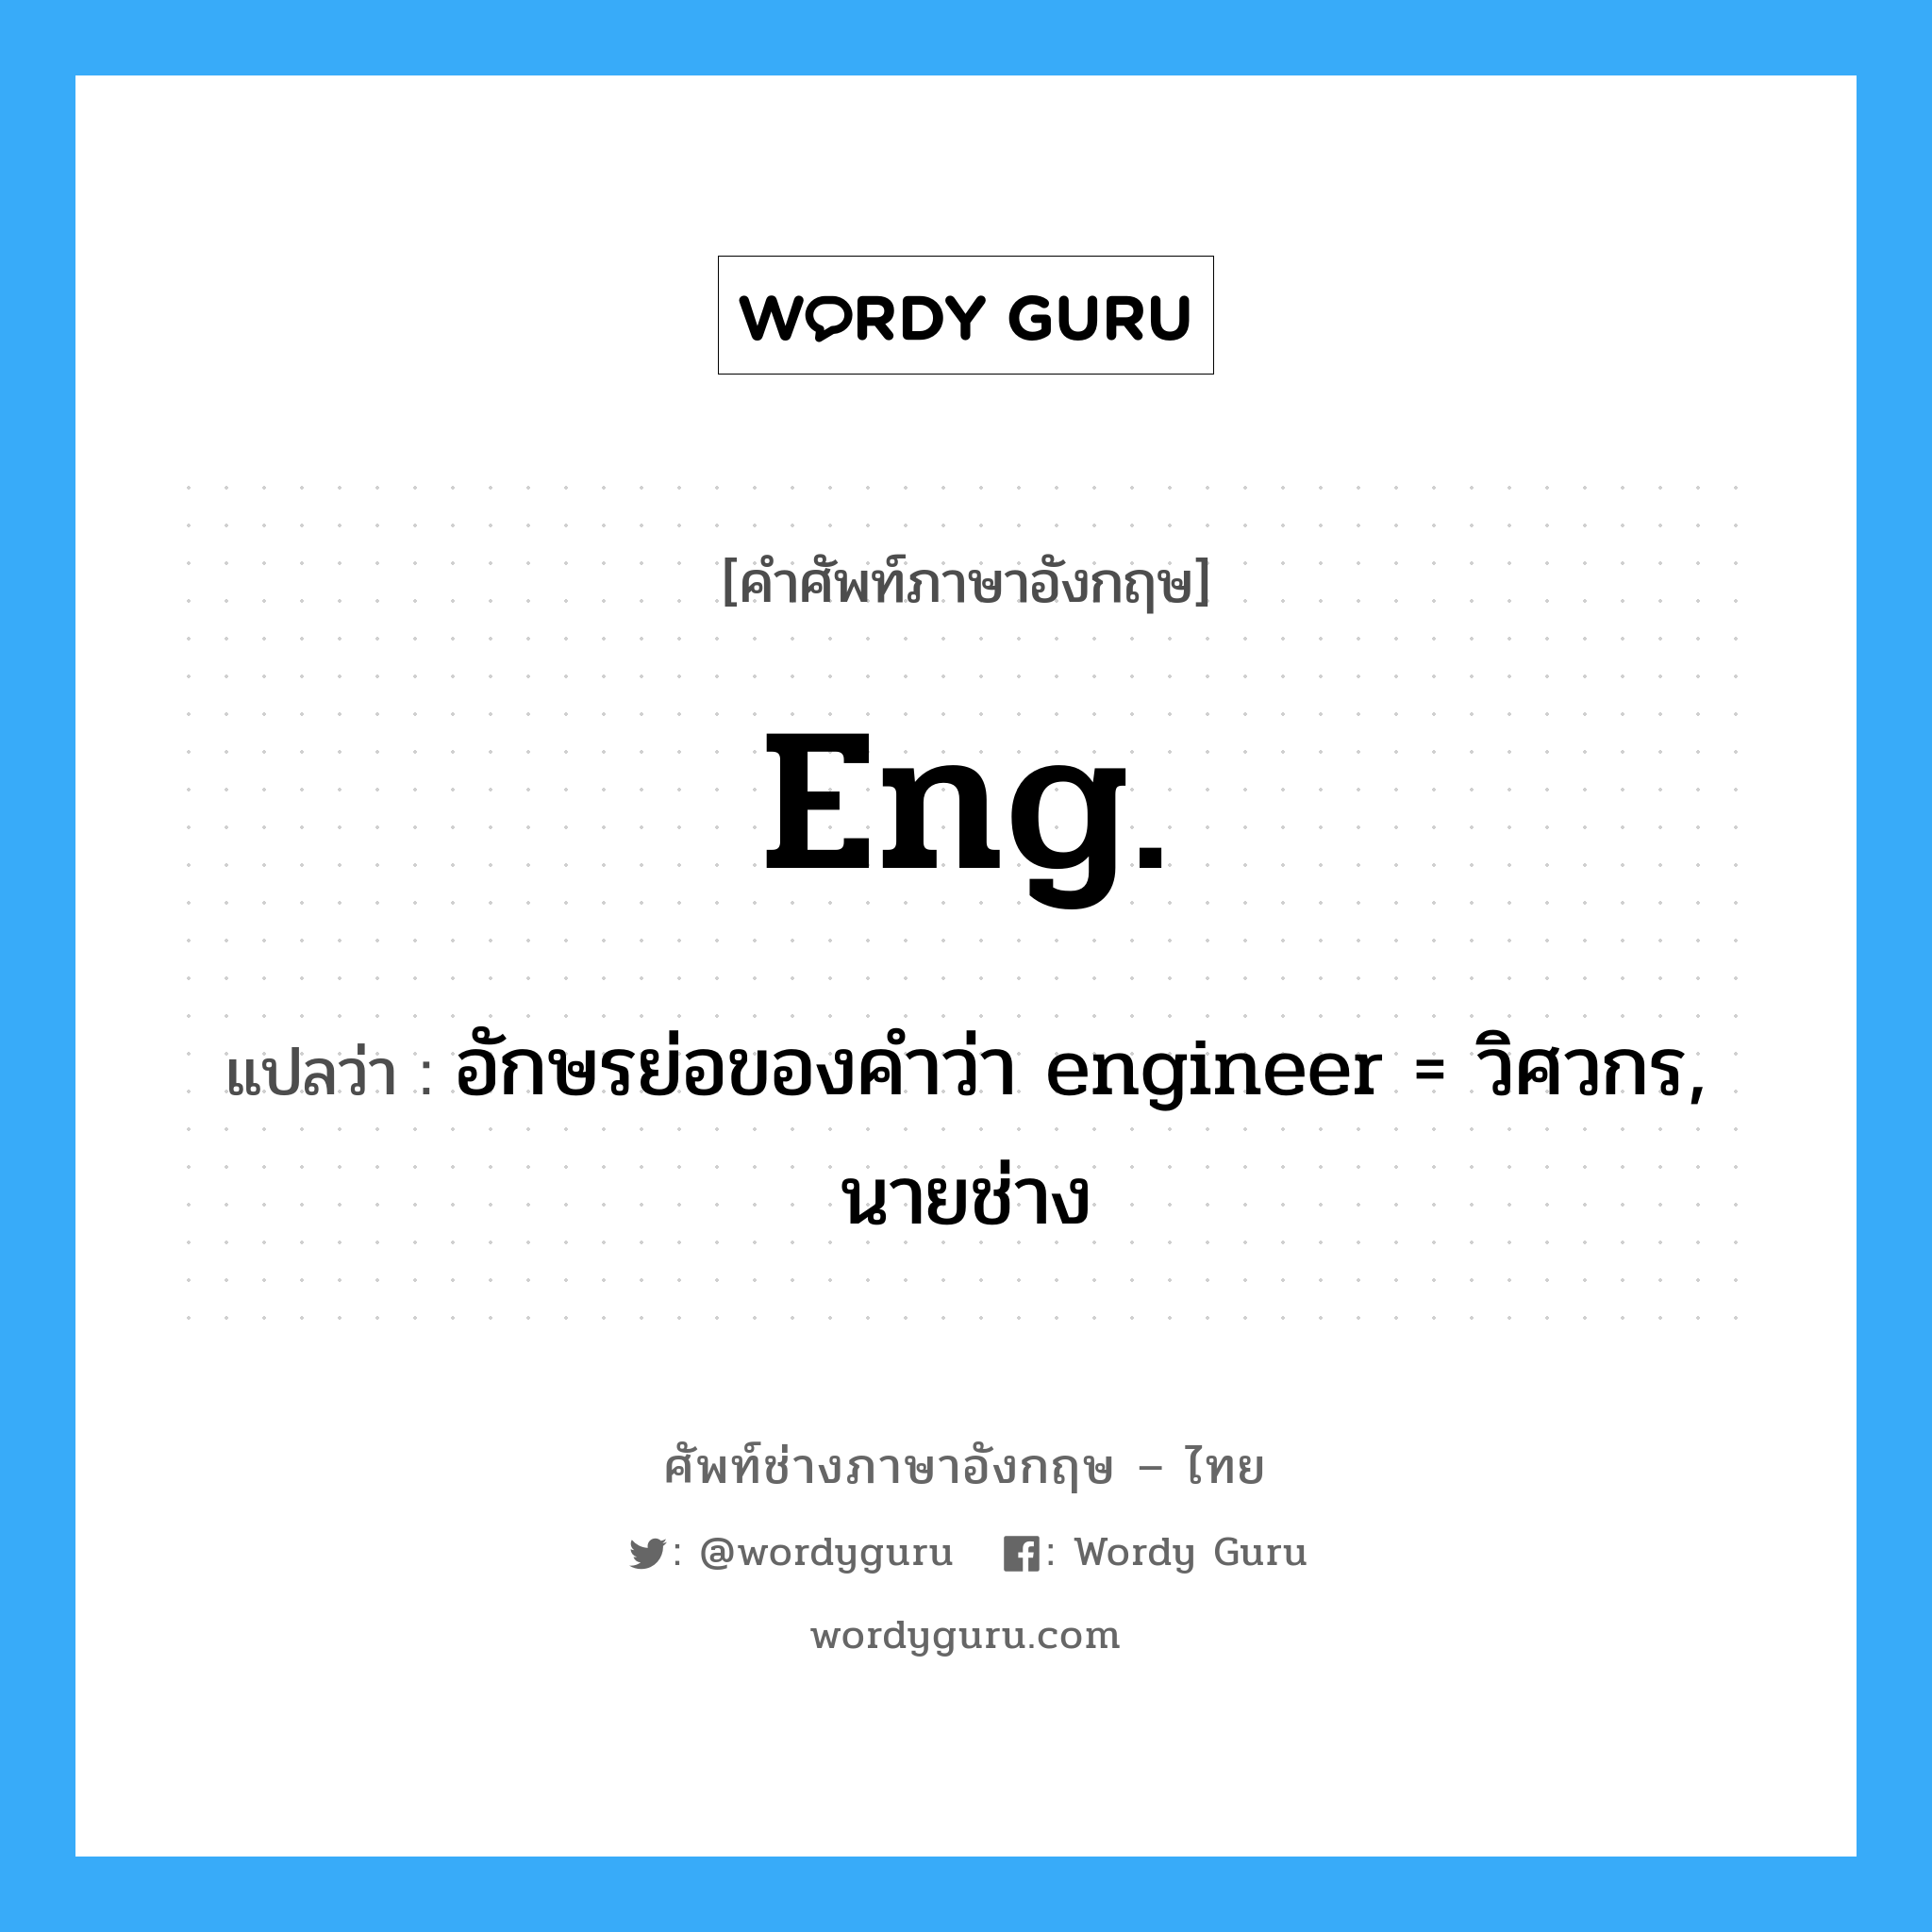 อักษรย่อของคำว่า engineer = วิศวกร, นายช่าง ภาษาอังกฤษ?, คำศัพท์ช่างภาษาอังกฤษ - ไทย อักษรย่อของคำว่า engineer = วิศวกร, นายช่าง คำศัพท์ภาษาอังกฤษ อักษรย่อของคำว่า engineer = วิศวกร, นายช่าง แปลว่า Eng.